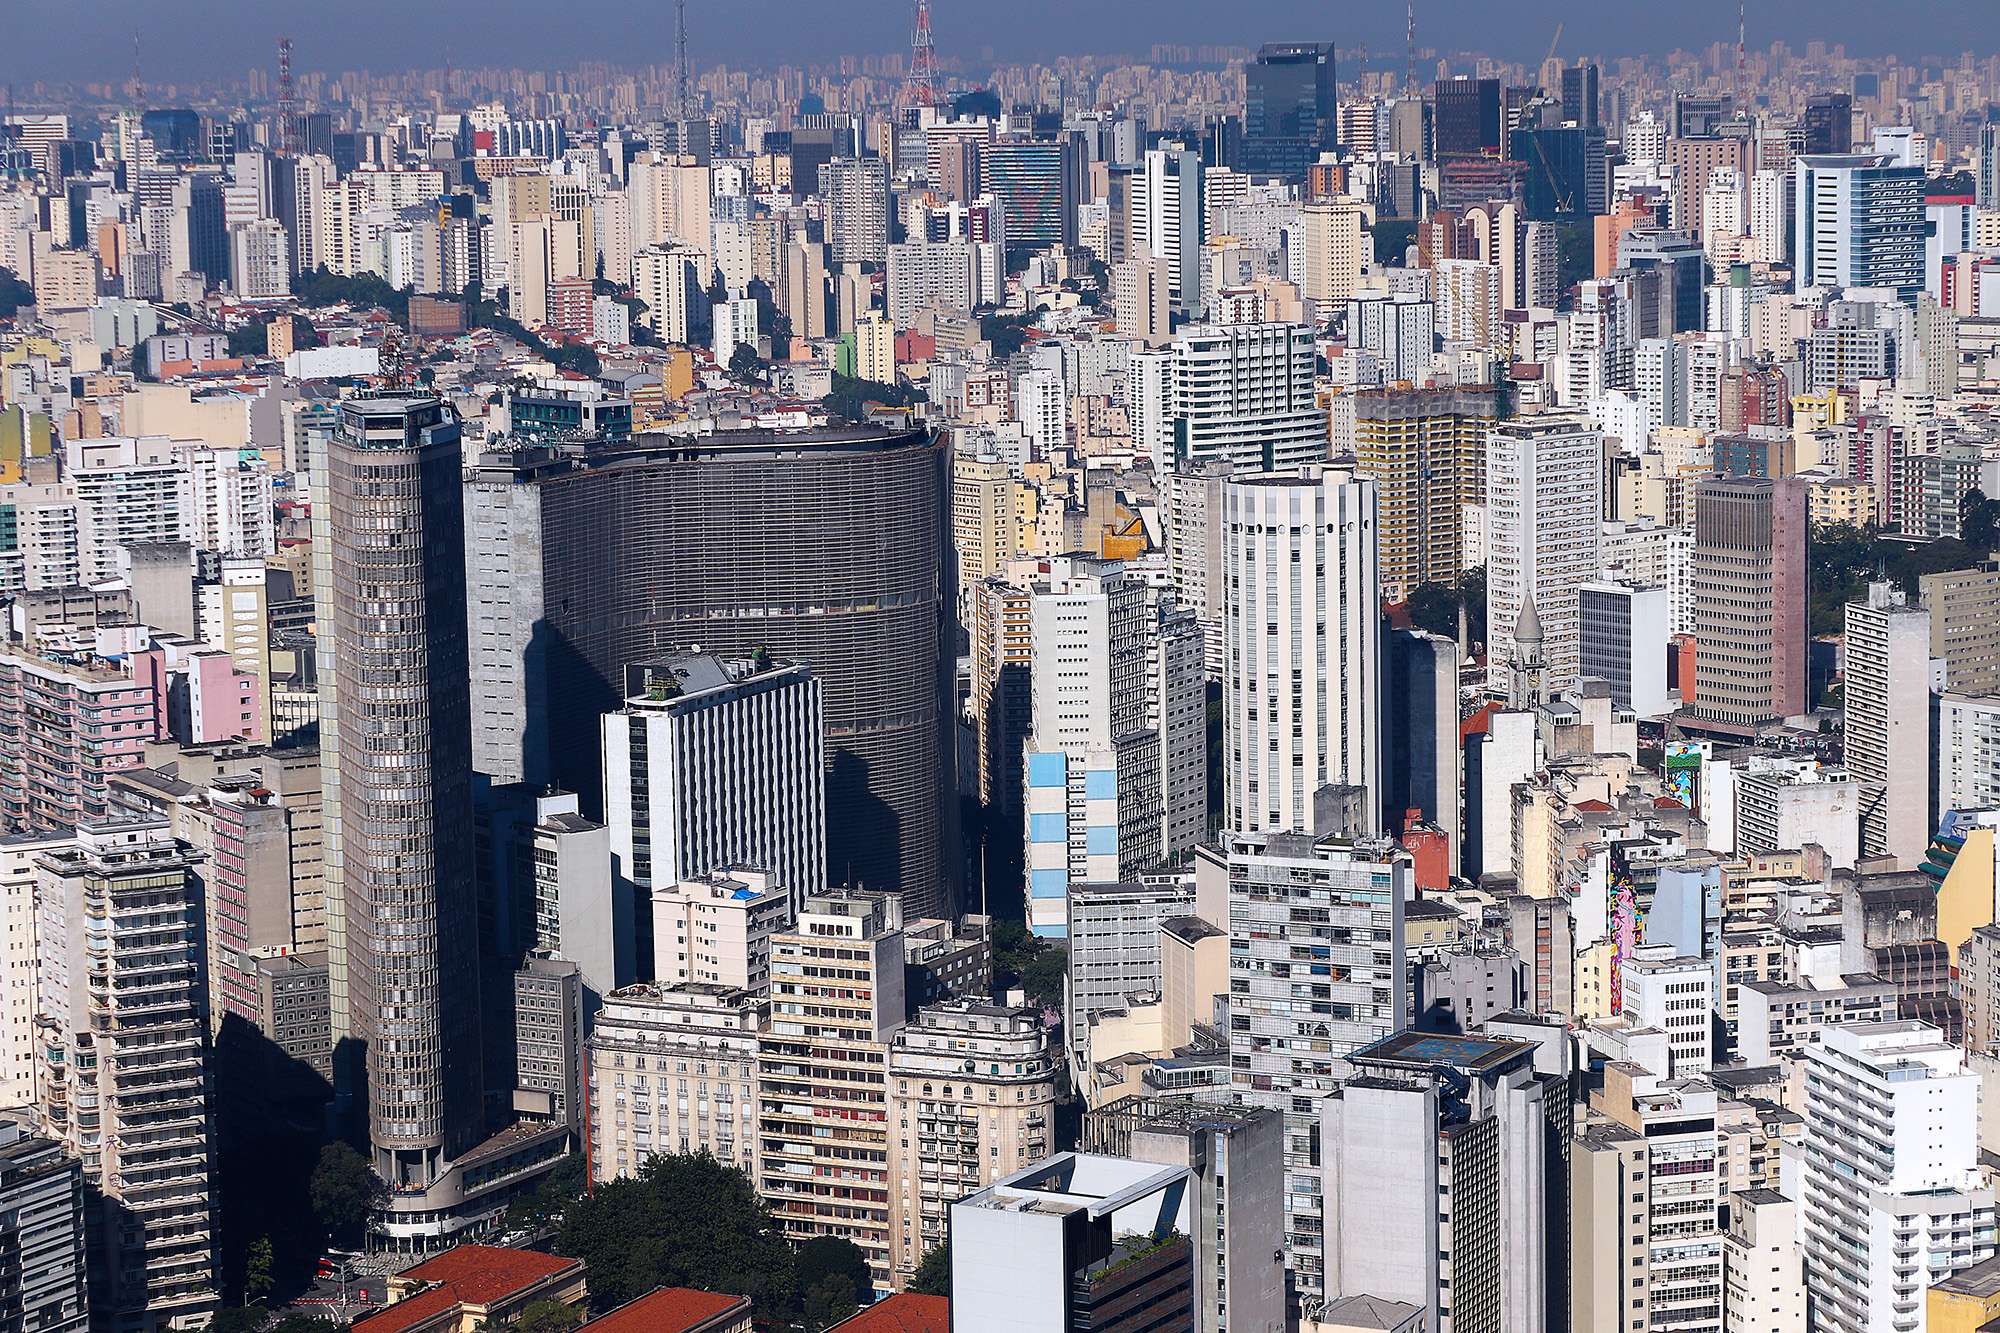 City of São Paulo